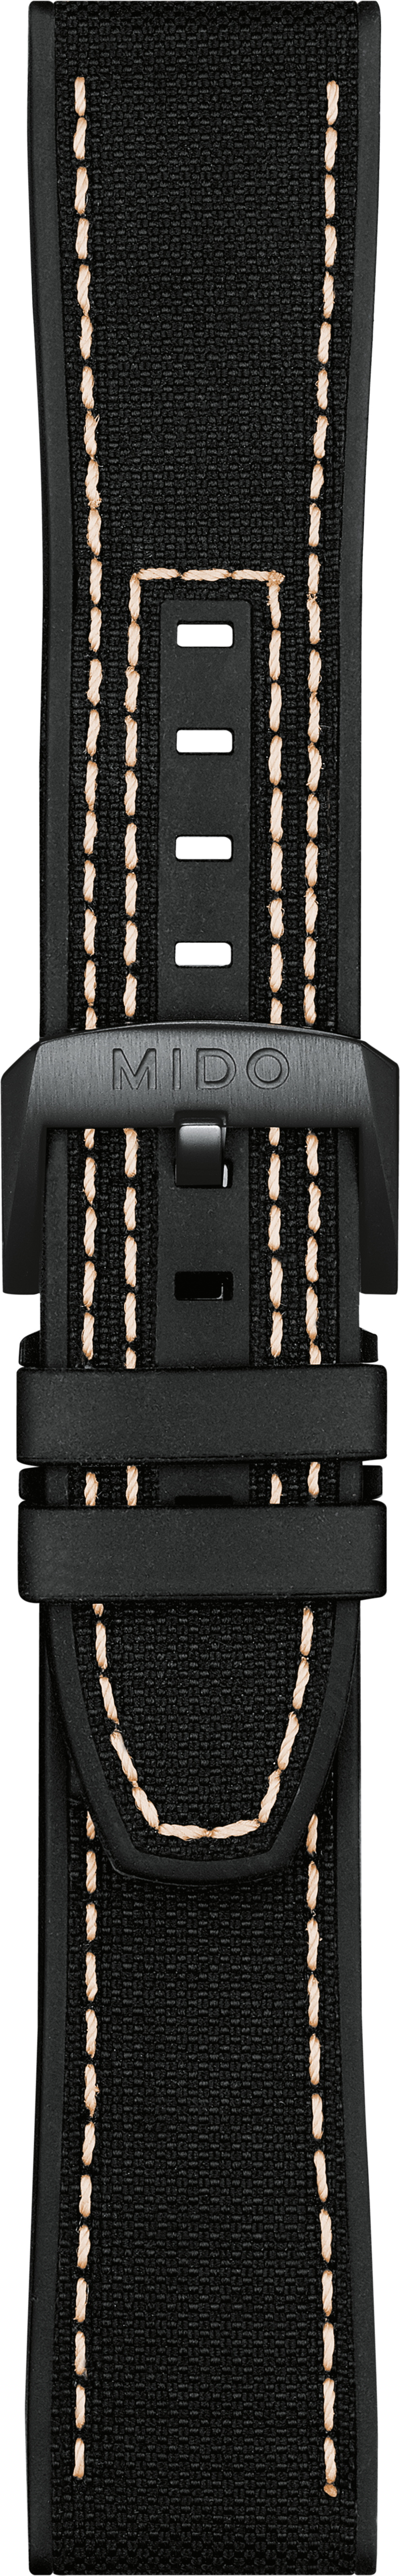 Mido Multifort black silicone strap